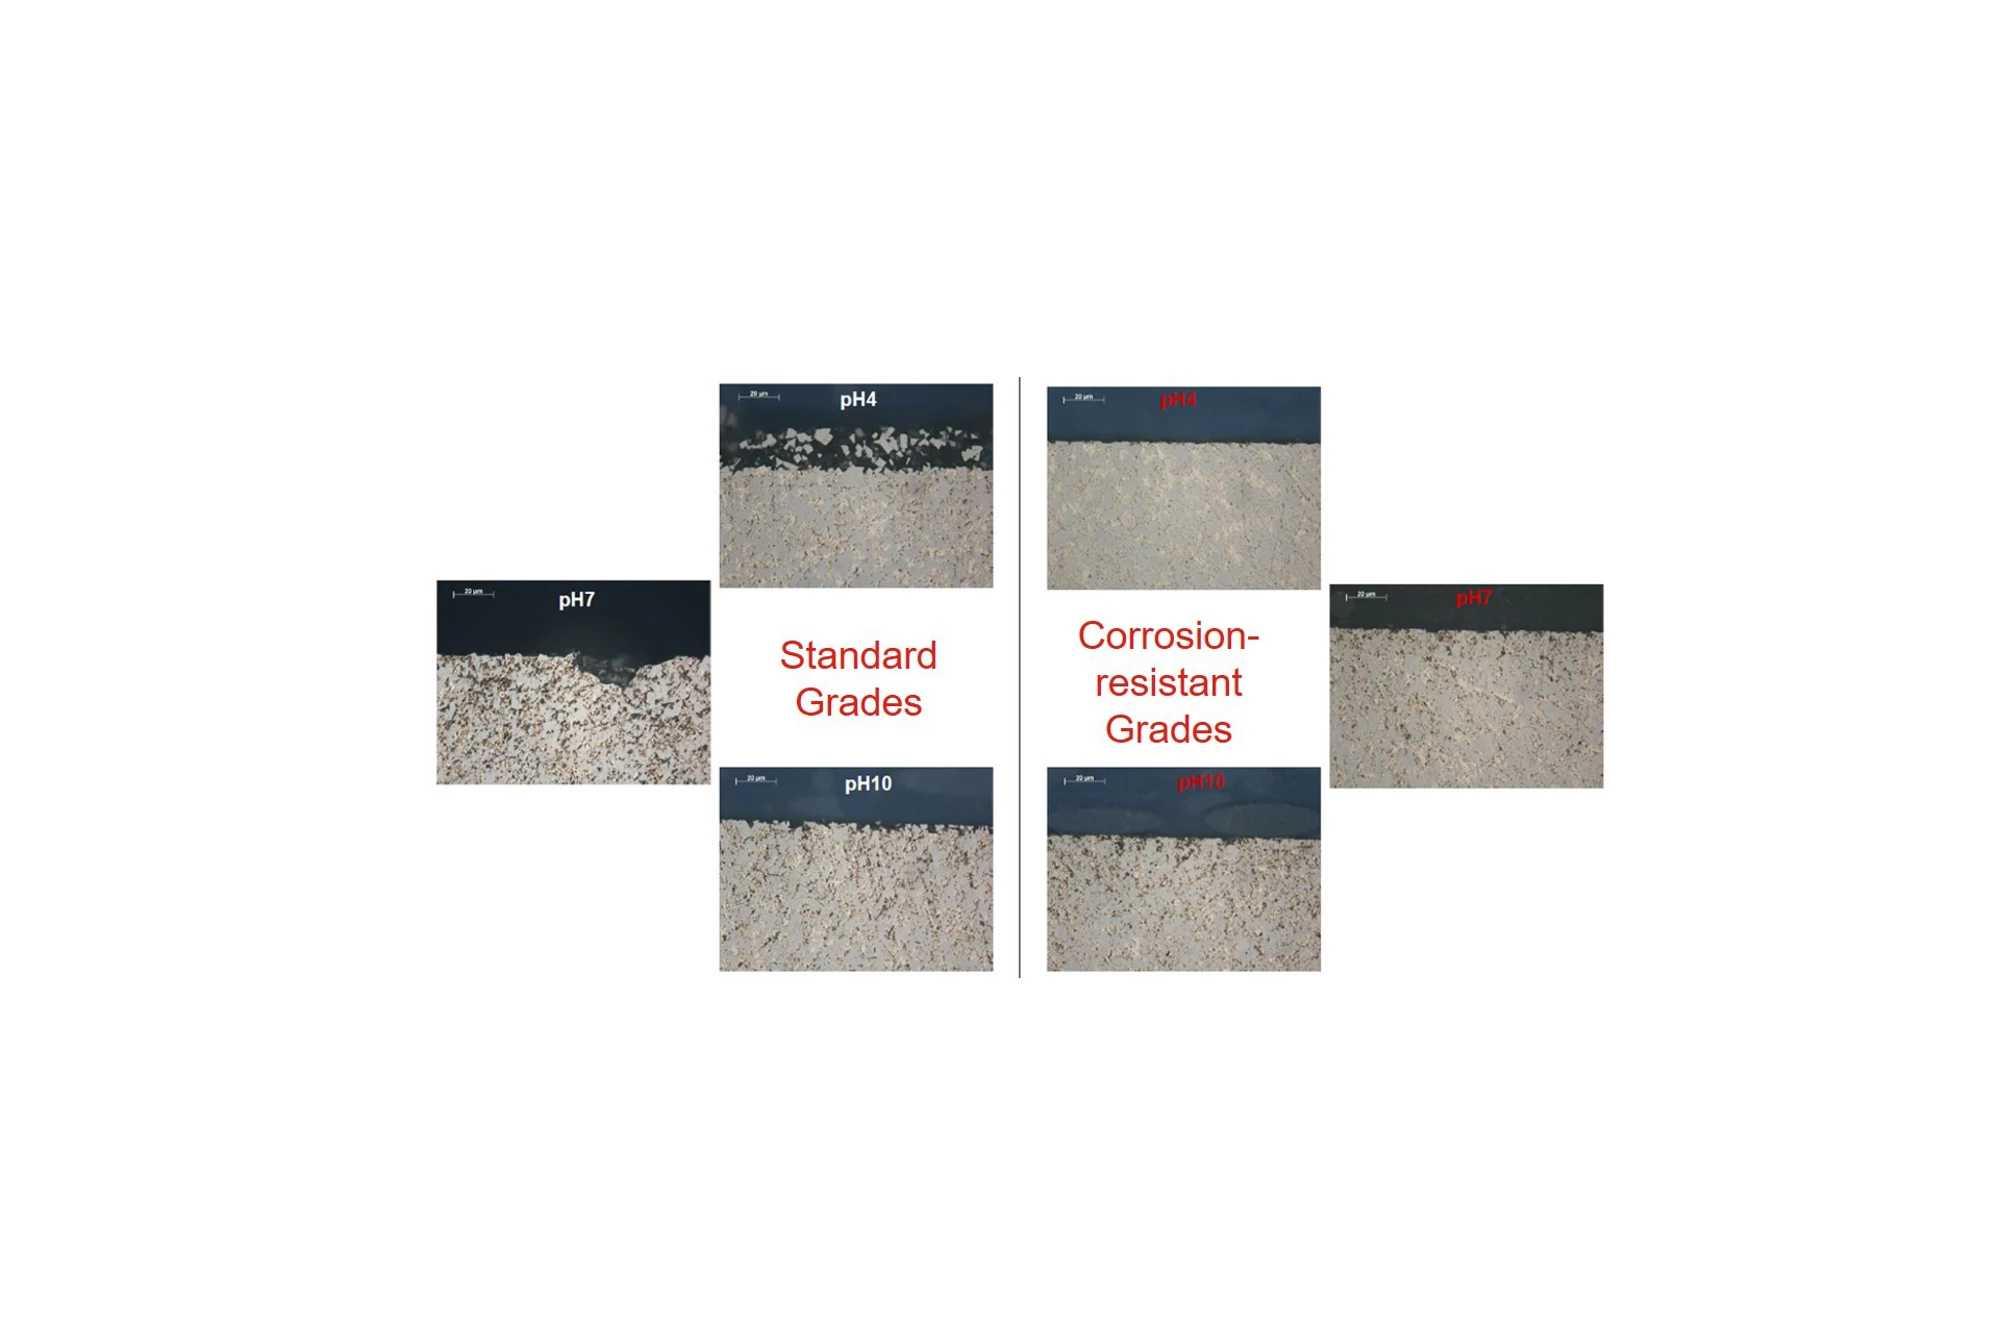 Comparison of standard grades and corrosion-resistant grades